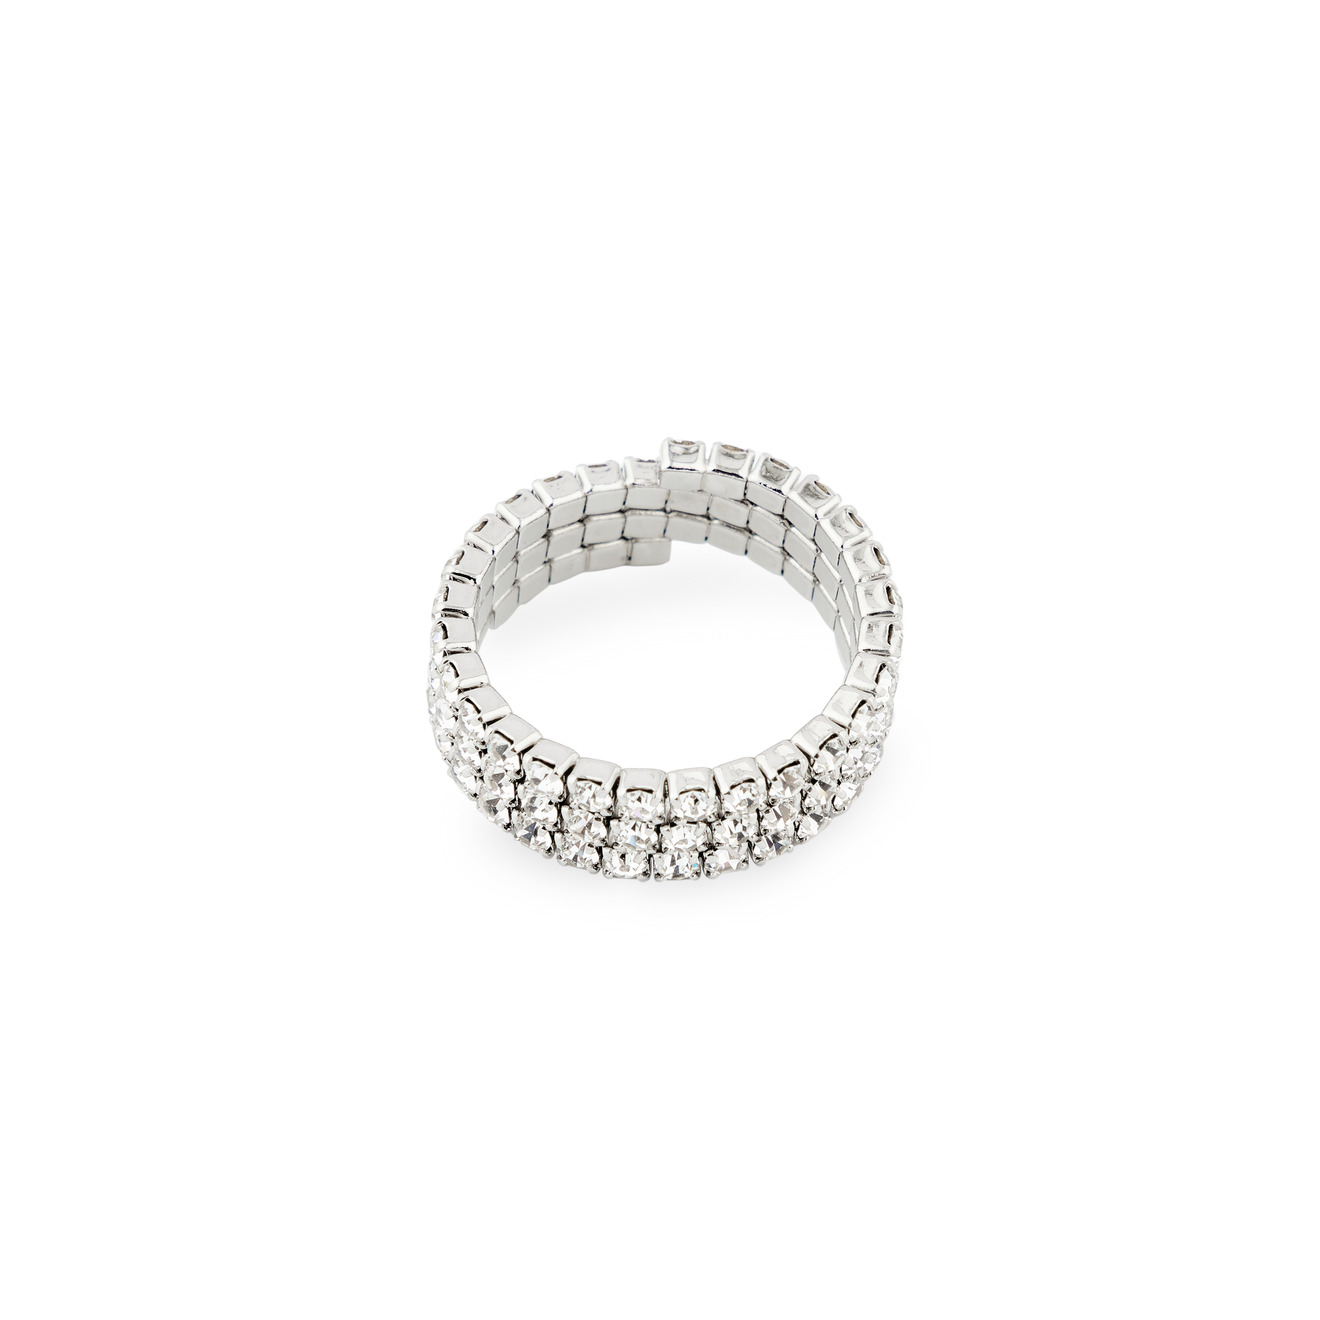 Herald Percy Серебристое кольцо из кристаллов herald percy серебристое кольцо из кристаллов с сердцами